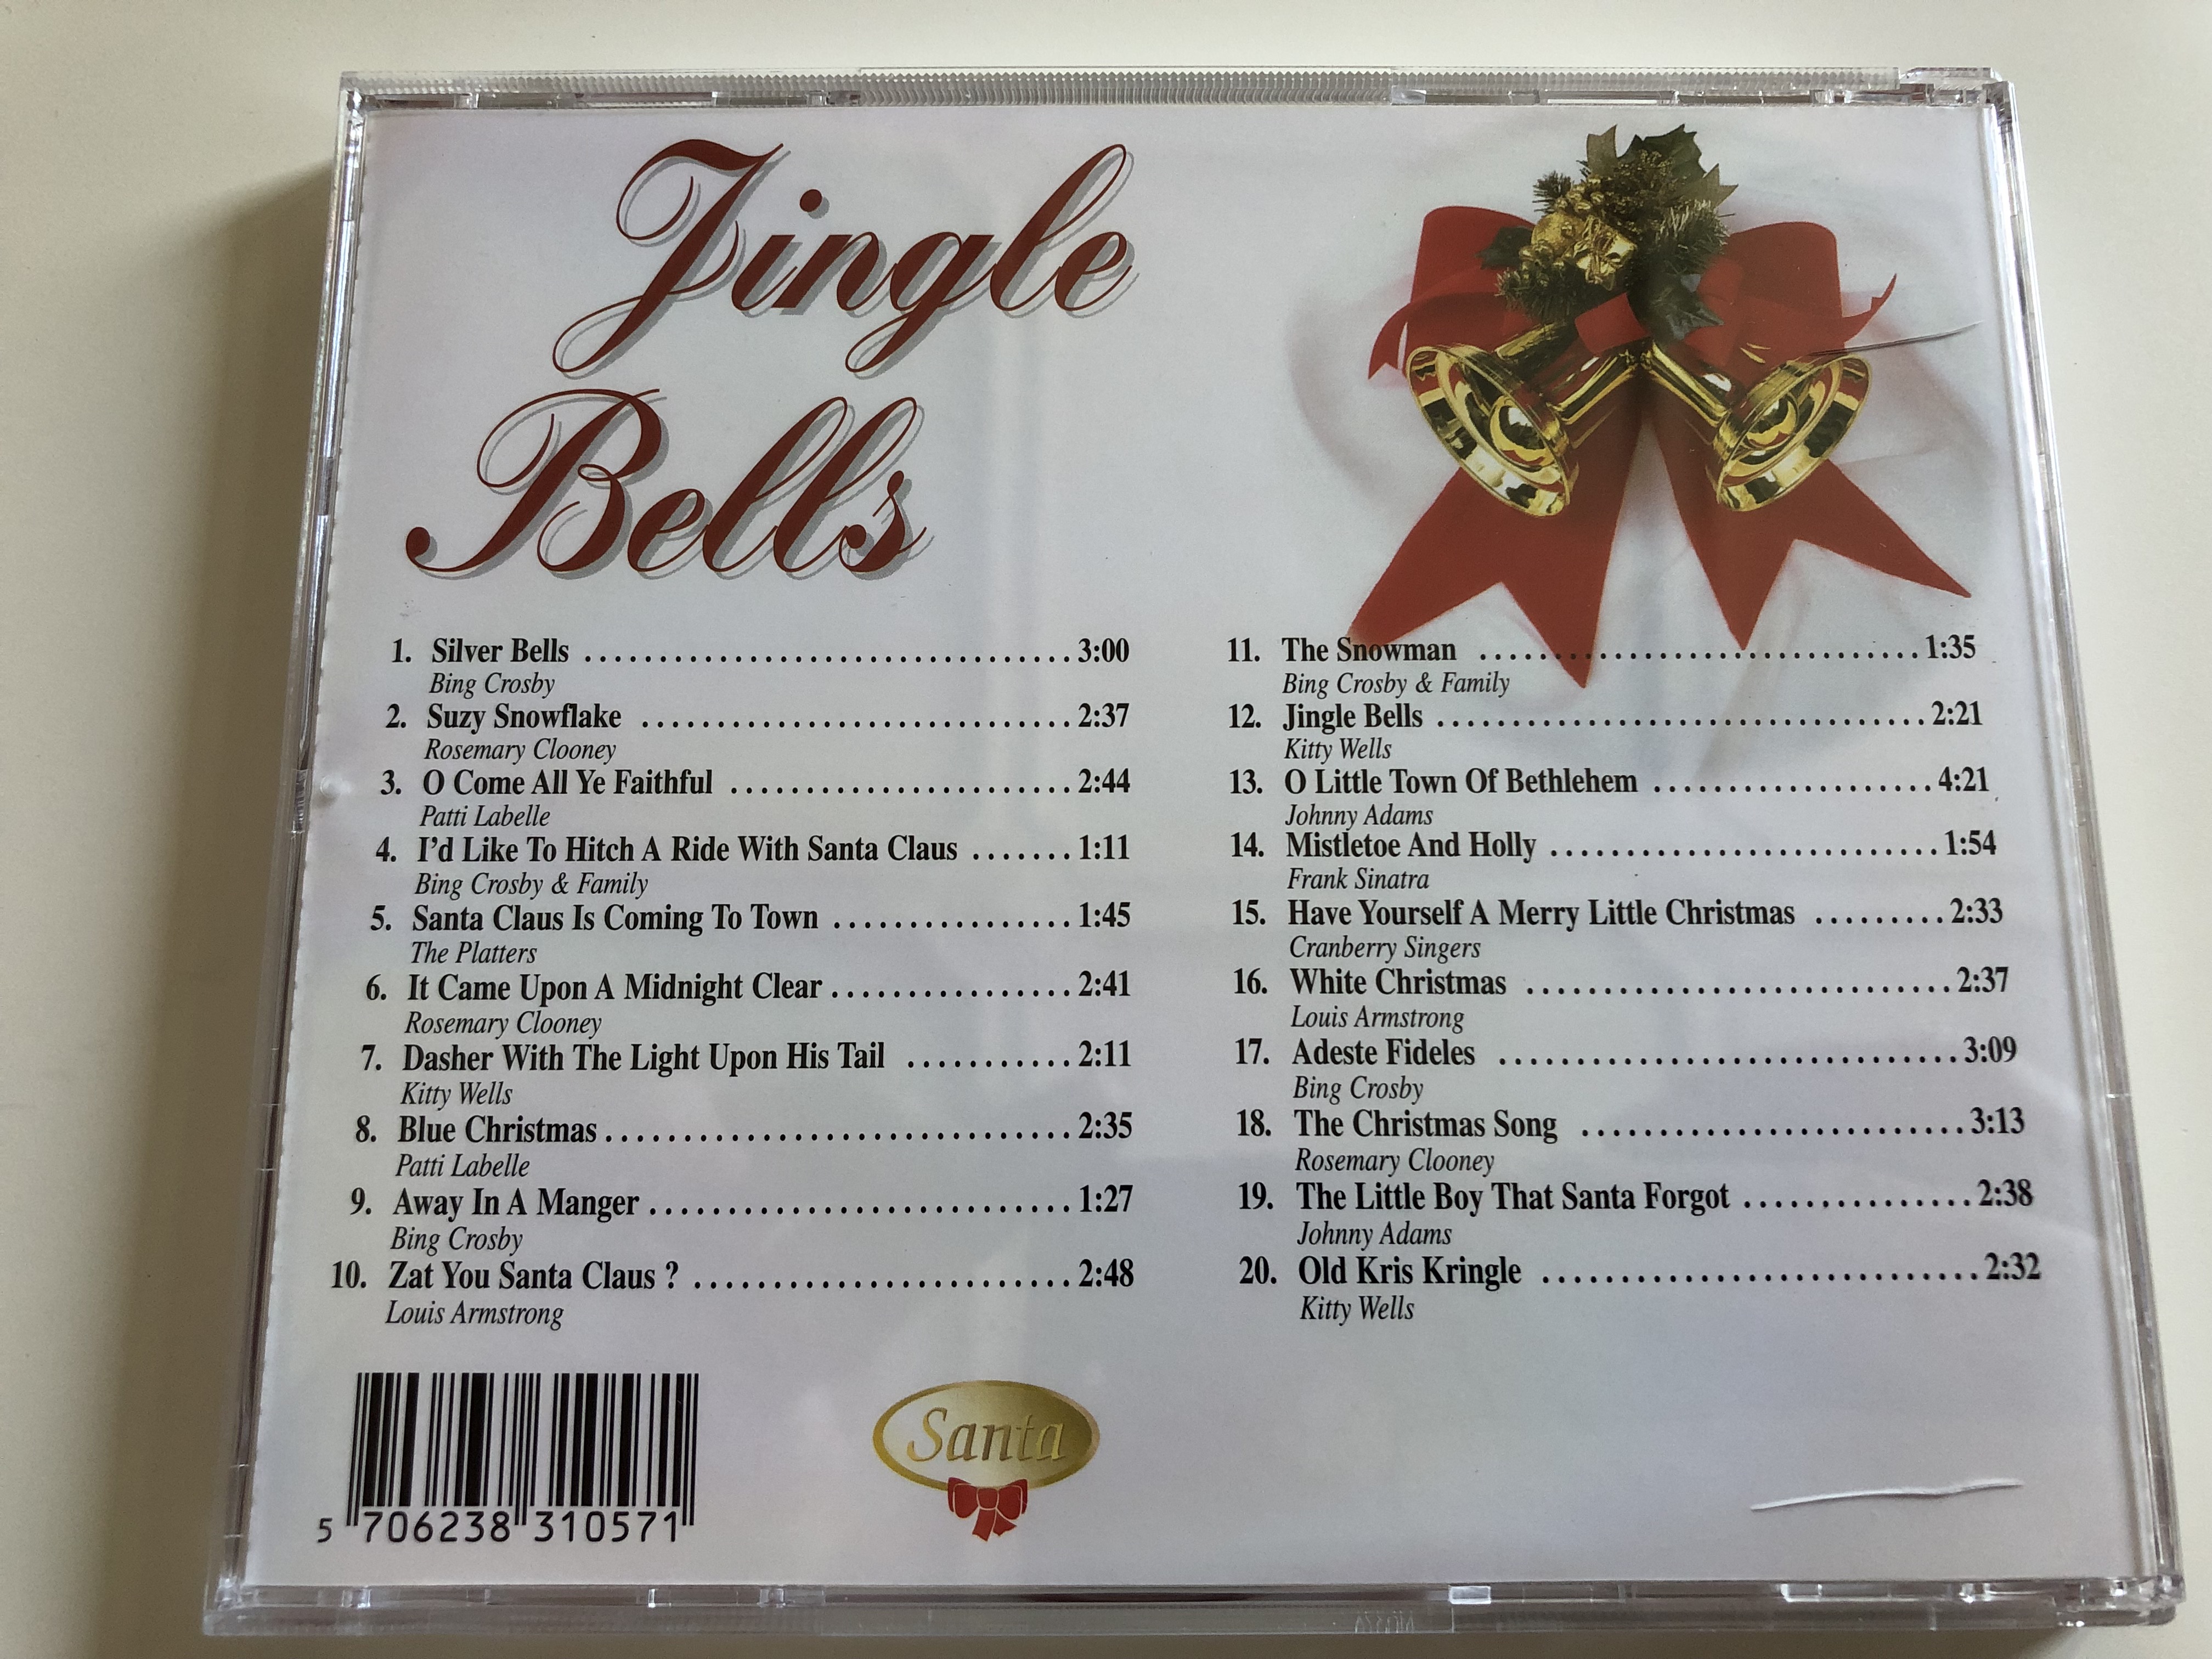 jingle-bells-20-beautiful-christmas-songs-elap-music-ltd.-audio-cd-1997-51583032-4-.jpg